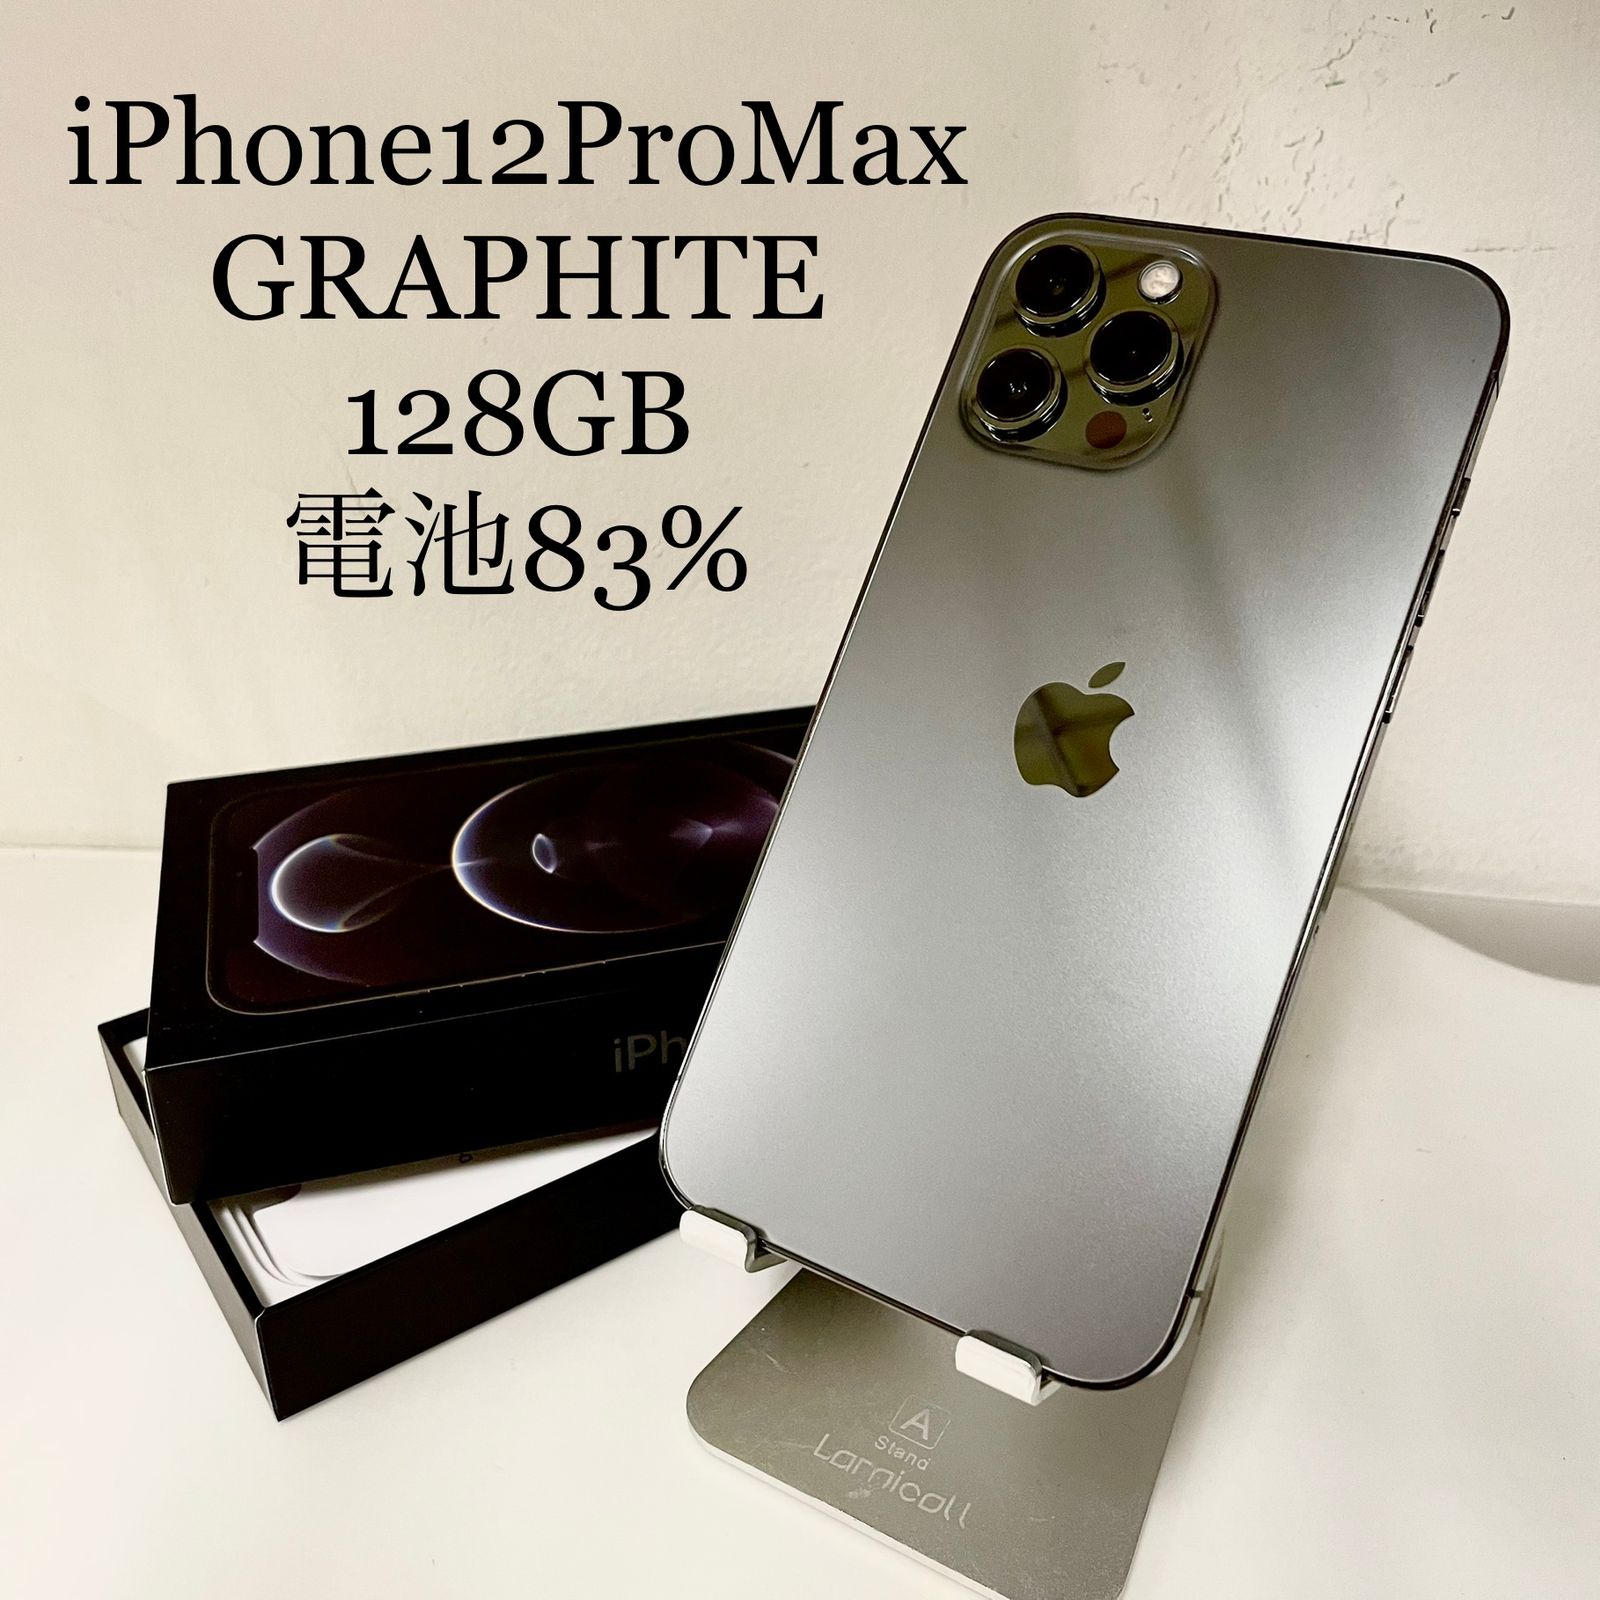 iPhone12 Pro Max グラファイト 128GB 電池残量83% - ネコモバイル ...